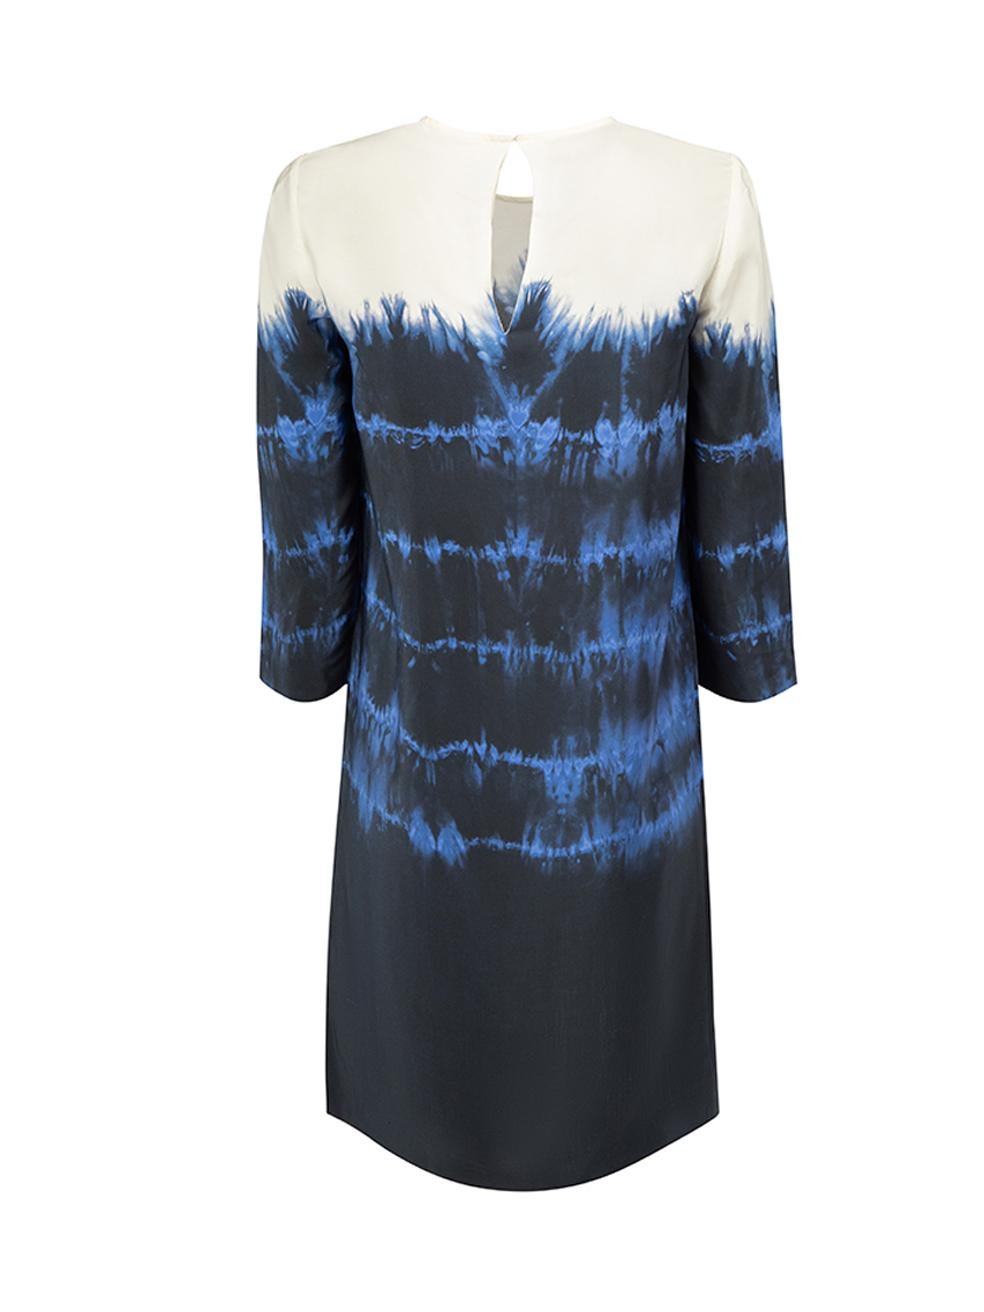 Stella McCartney Women's Blue Silk Tie Dye Print Dress In Good Condition For Sale In London, GB